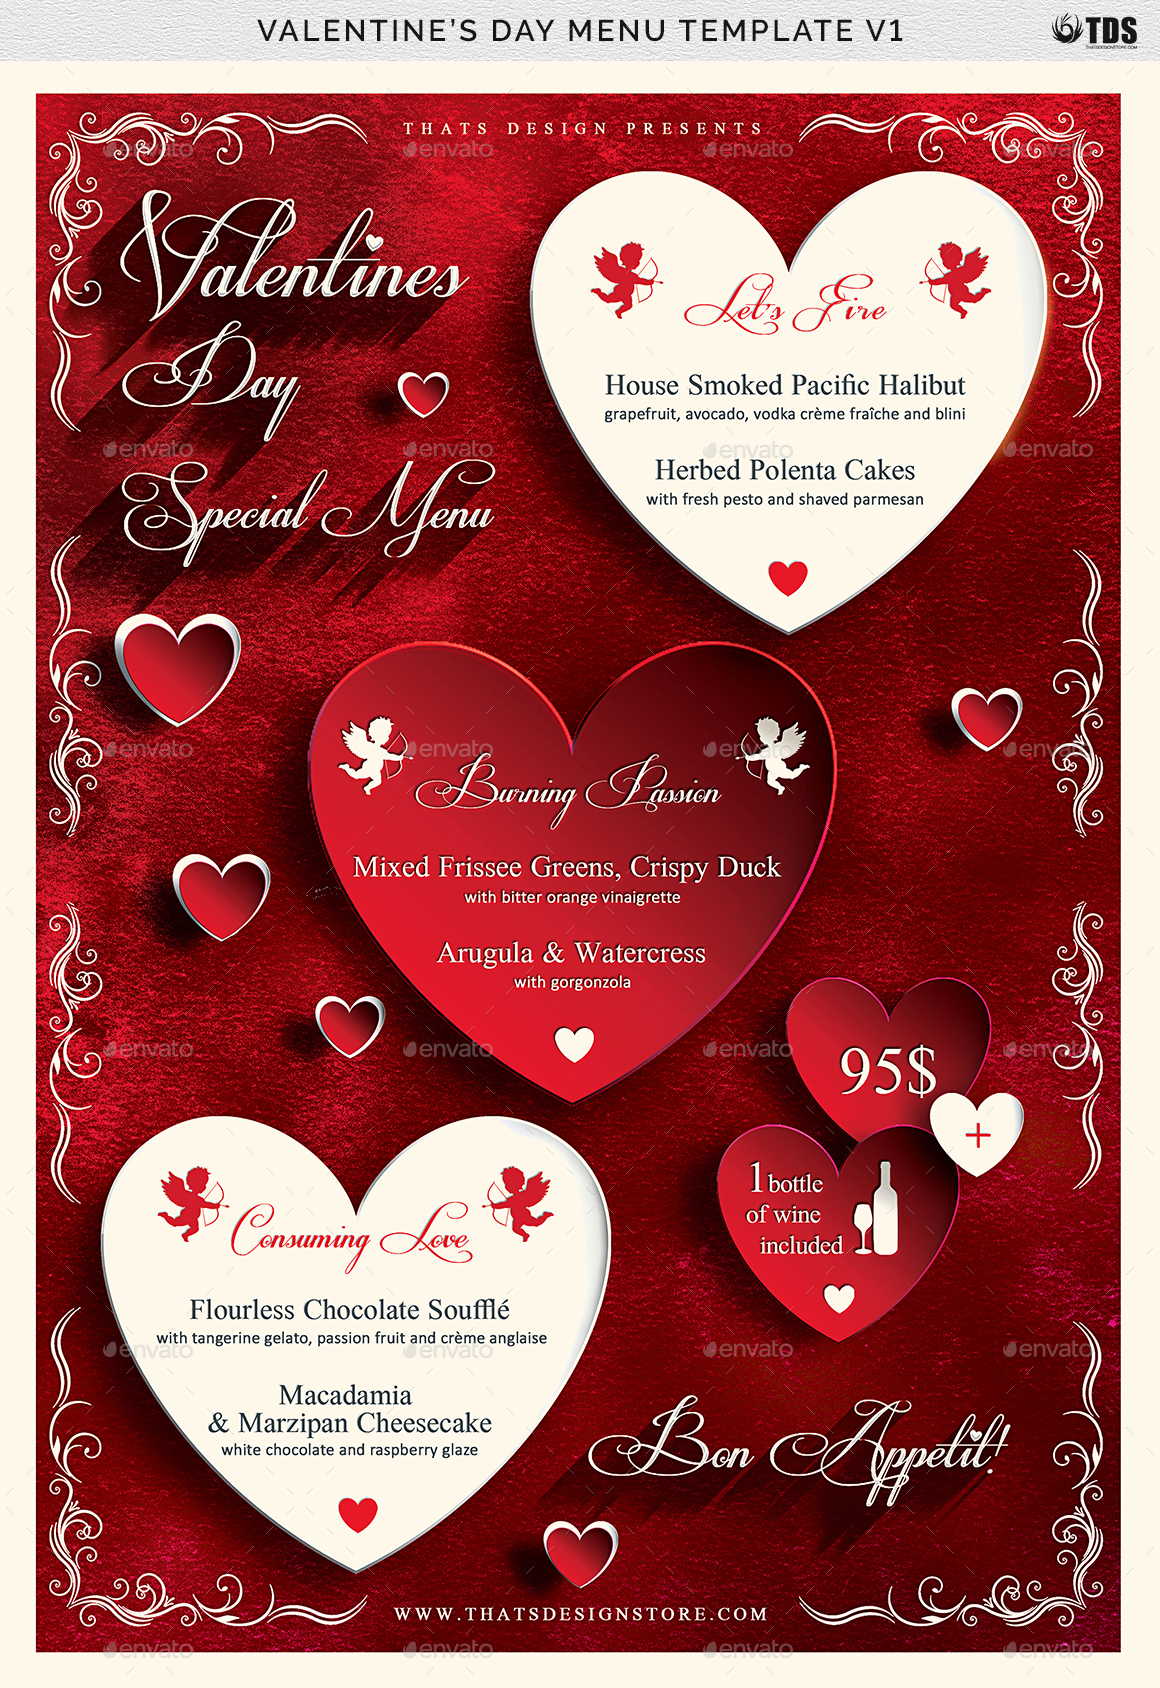 valentines-day-menu-template-v1-by-lou606-graphicriver